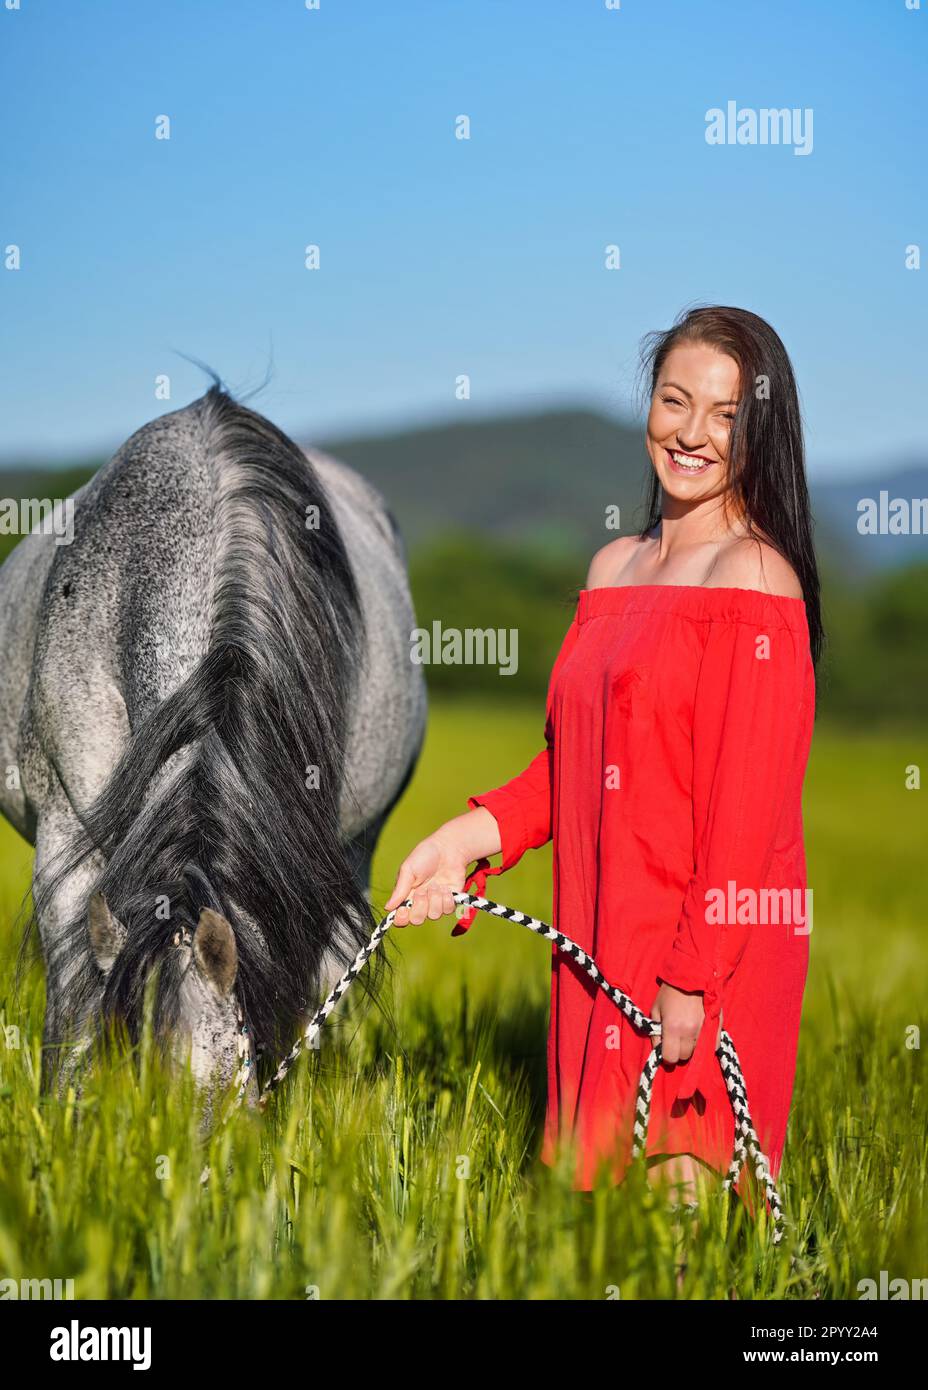 Eine junge Frau mit dunklen Haaren und leuchtend rotem Kleid, die ihr arabisches graues Pferd an sonnigen Tagen auf grünem Feld führt, lacht, während das Tier Gras isst, Schließfahndung Stockfoto